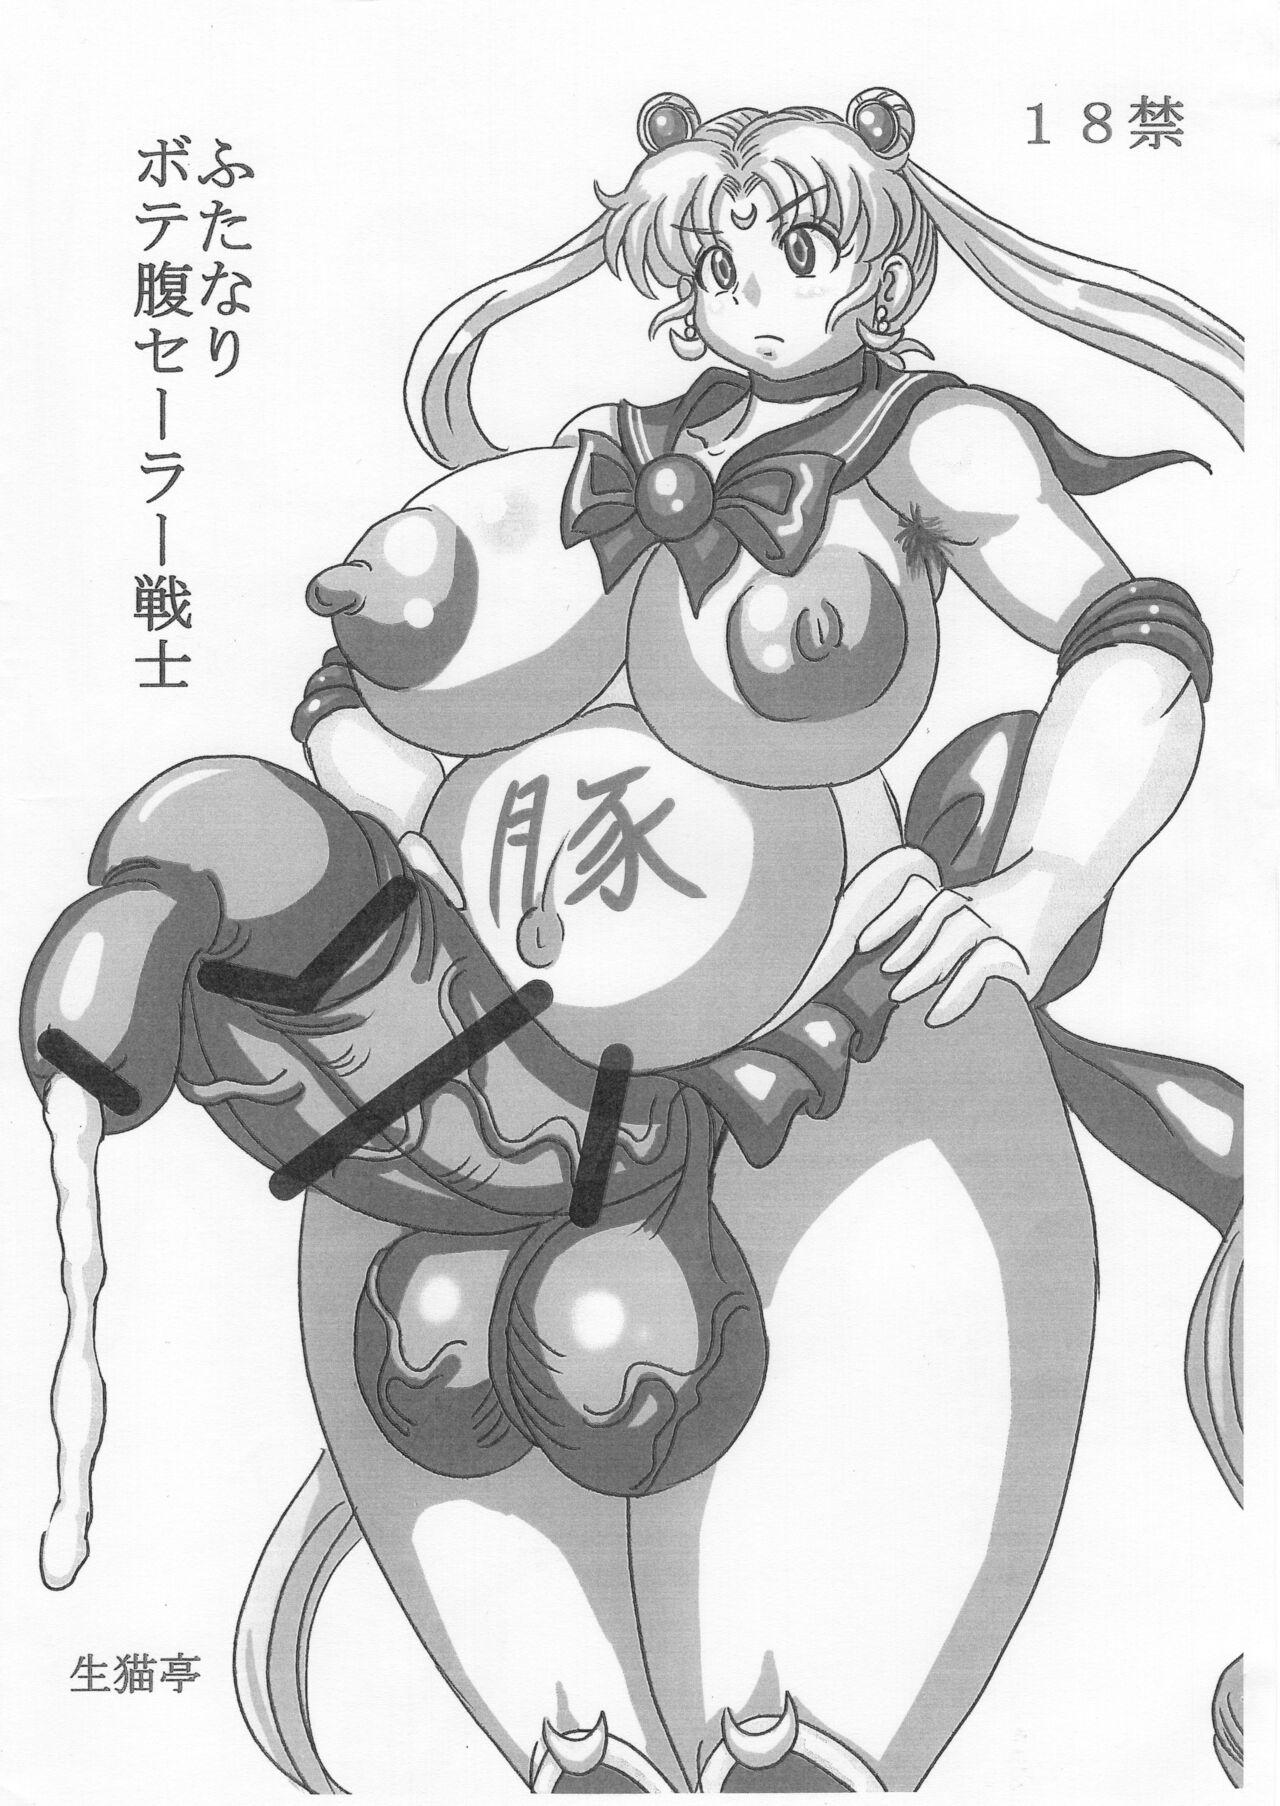 Perfect Body Porn ふたなりボテ腹セーラー戦士 - Sailor moon | bishoujo senshi sailor moon Sex Toys - Page 2